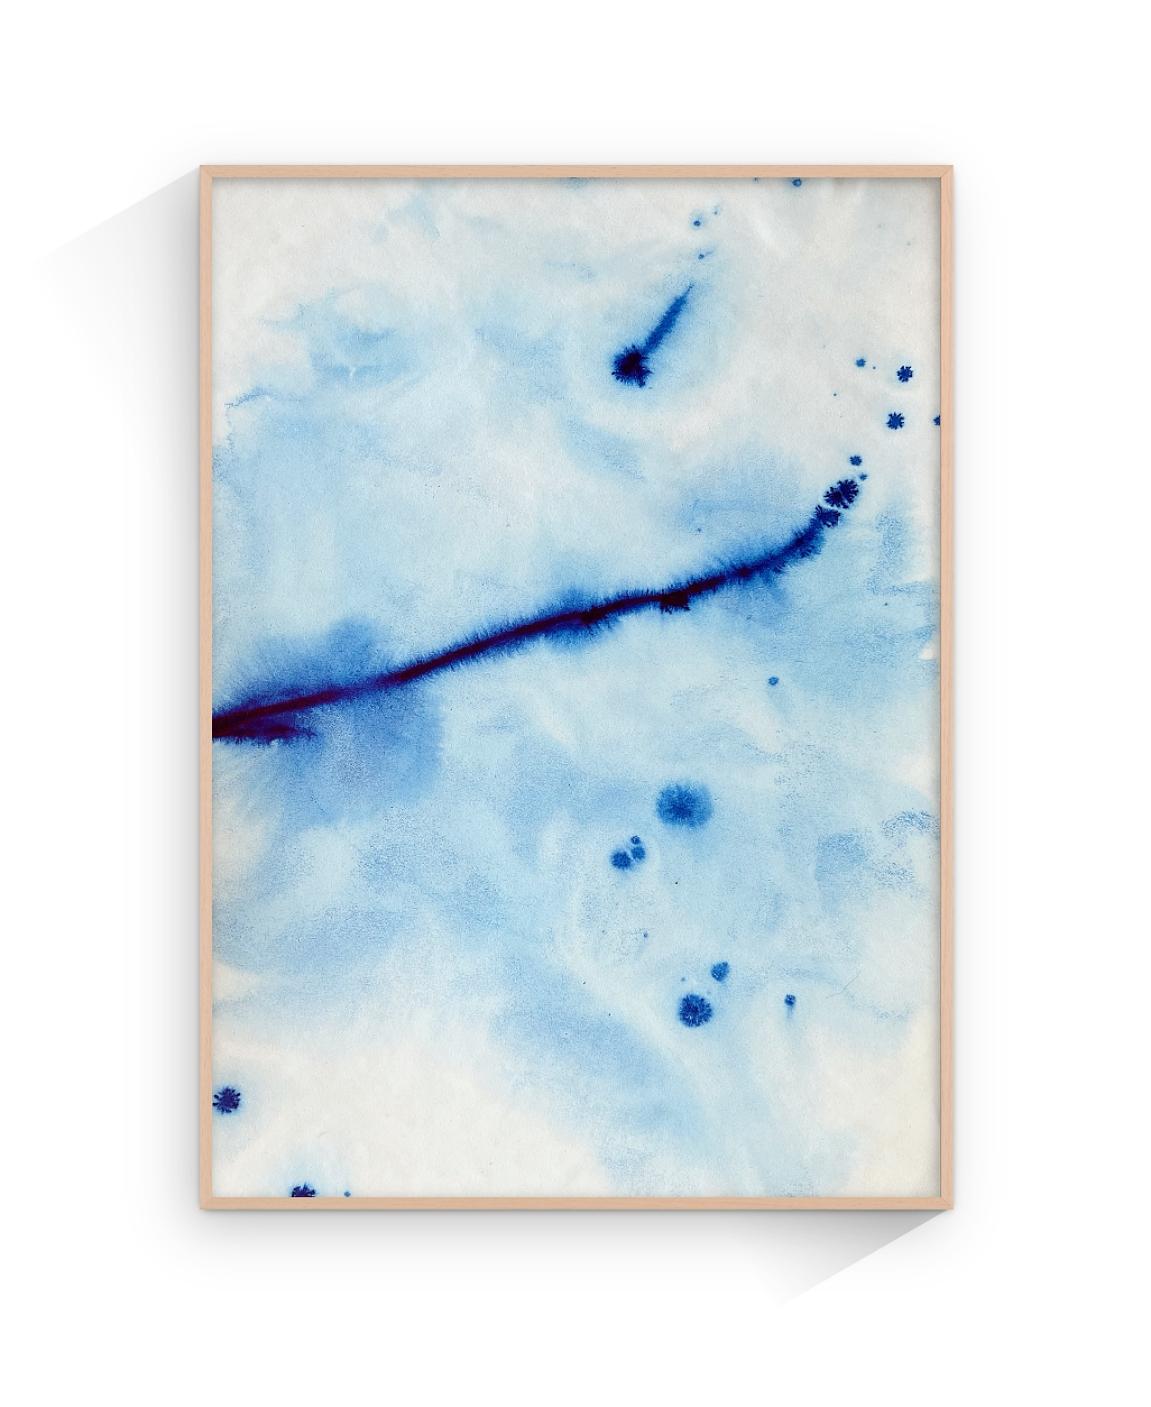 Waves de mer bleues méditerranéennes, peinture à l'encre faite à la main, Ripples Calming, édition limitée - Painting de TUSET